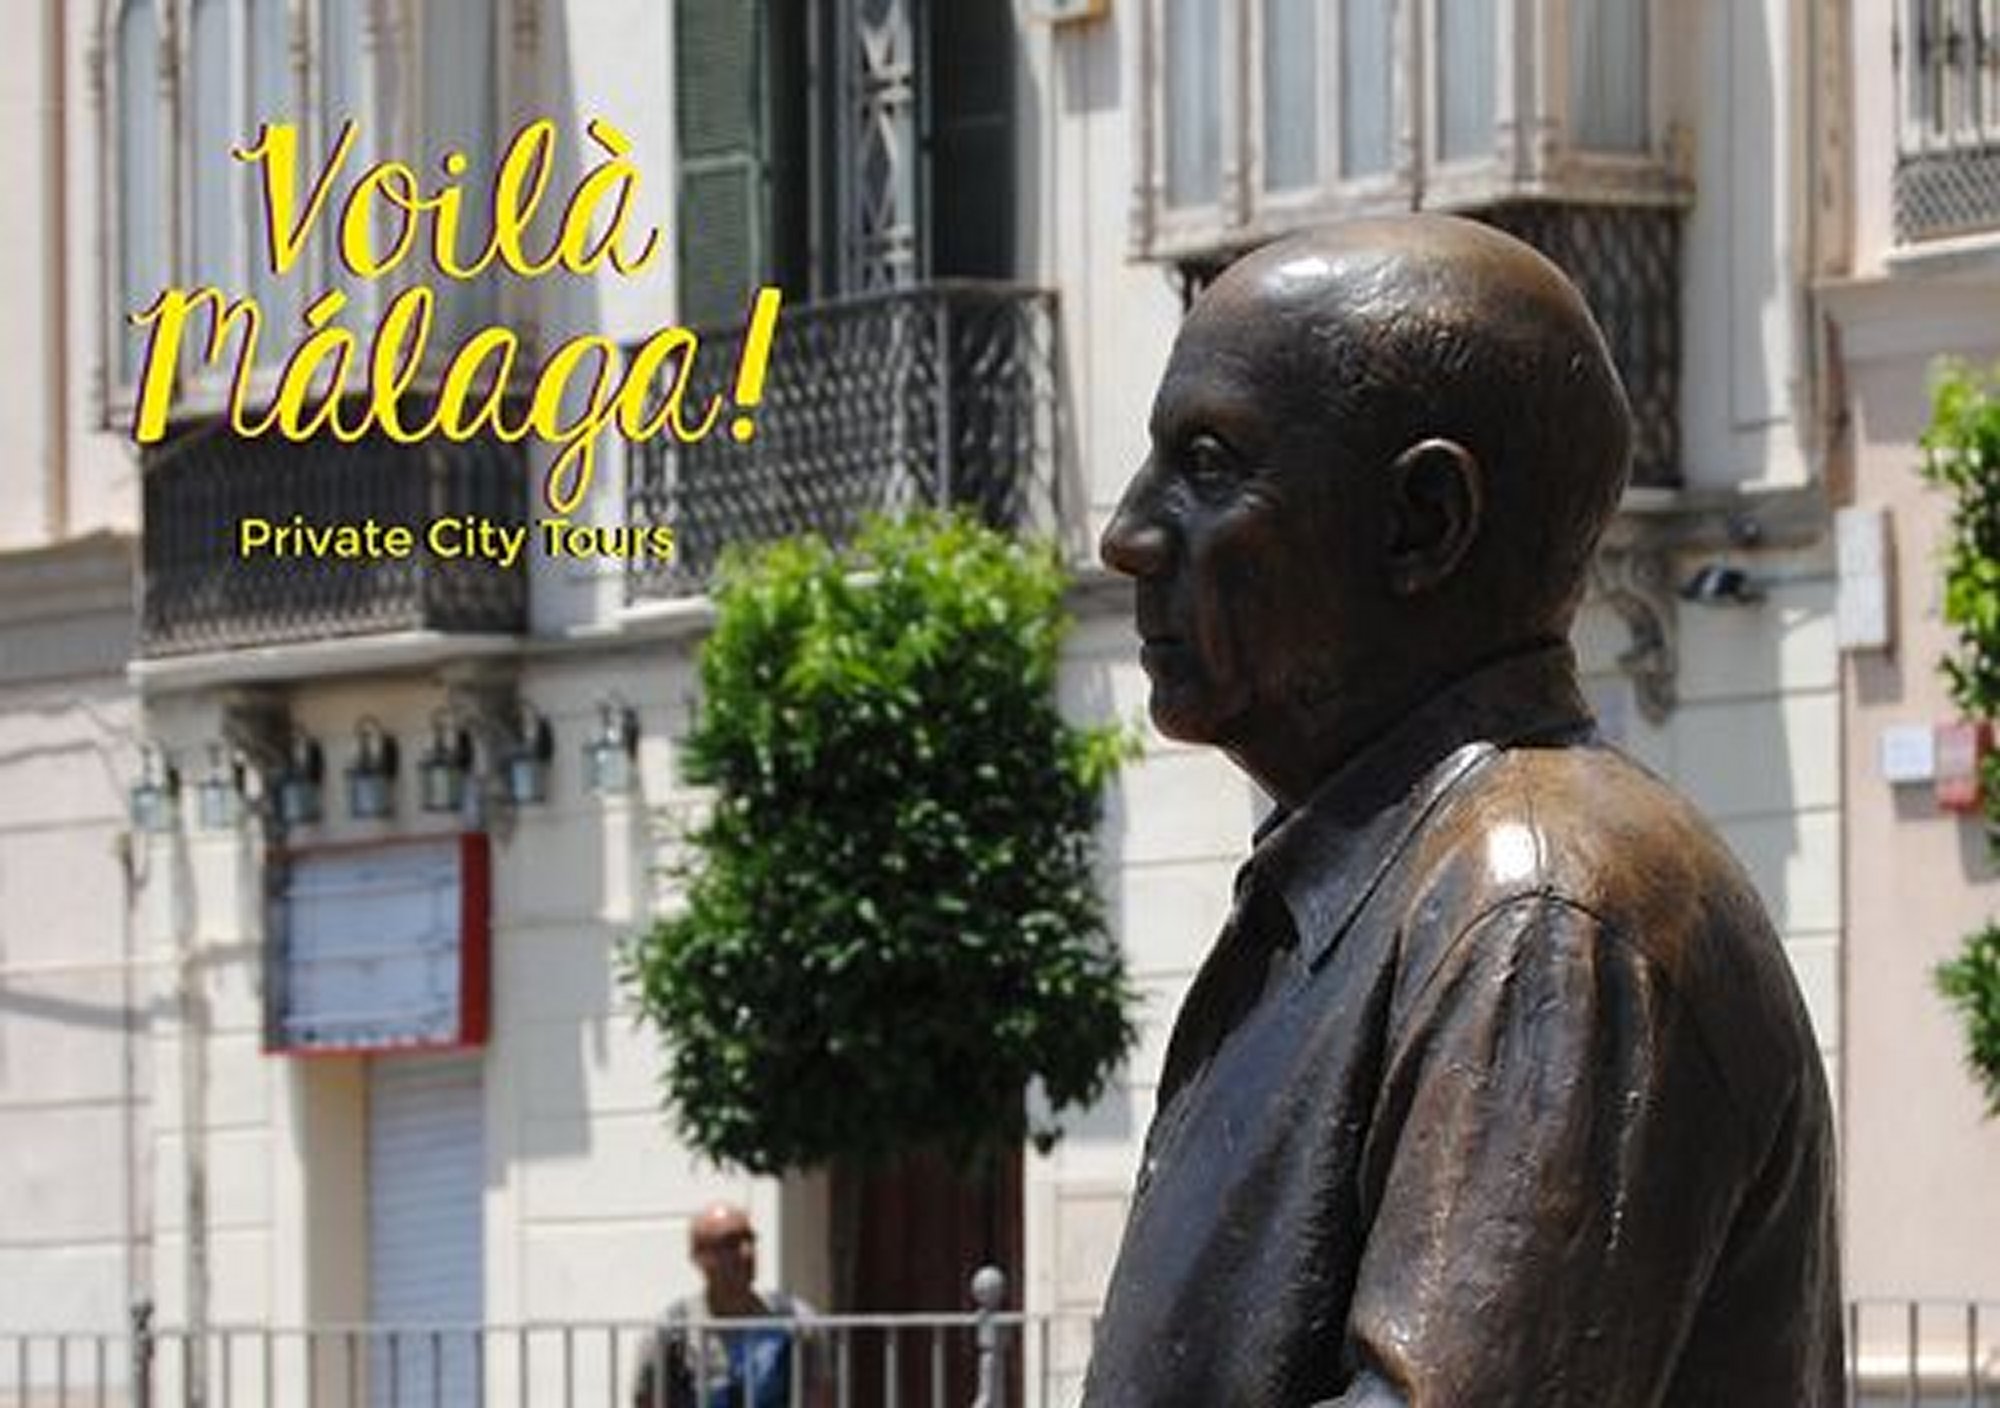 réserver guidées tours Culturel Málaga sur les traces de Picasso billets visiter